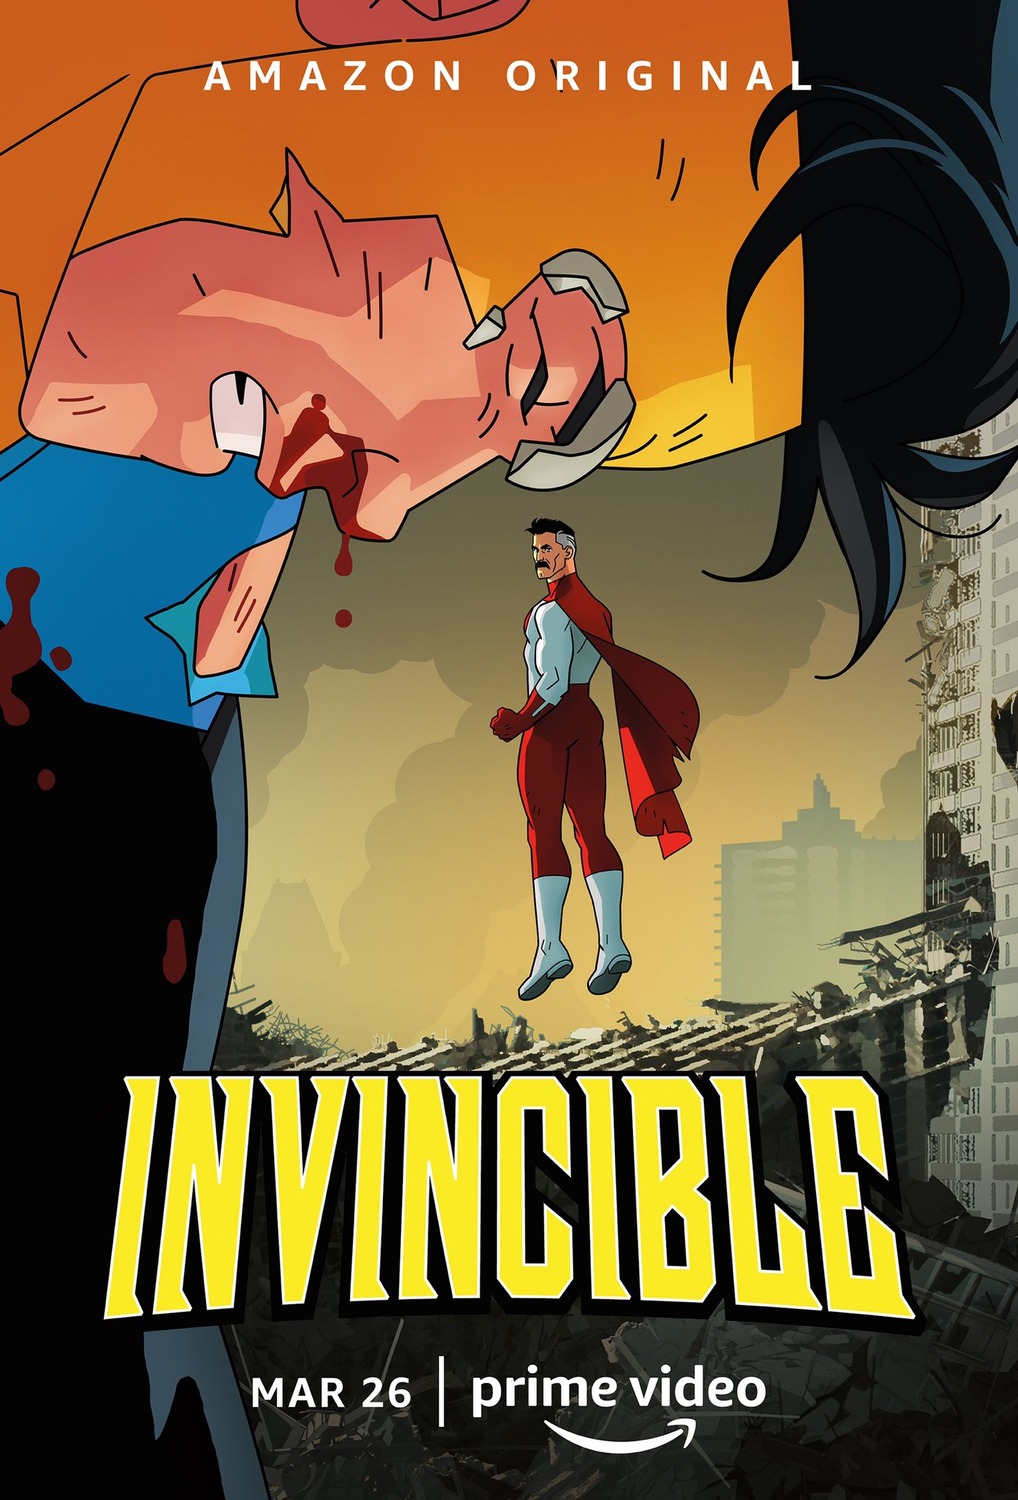 Animação de Invincible vira hit no  Prime e garante mais 2 temporadas  - Canaltech